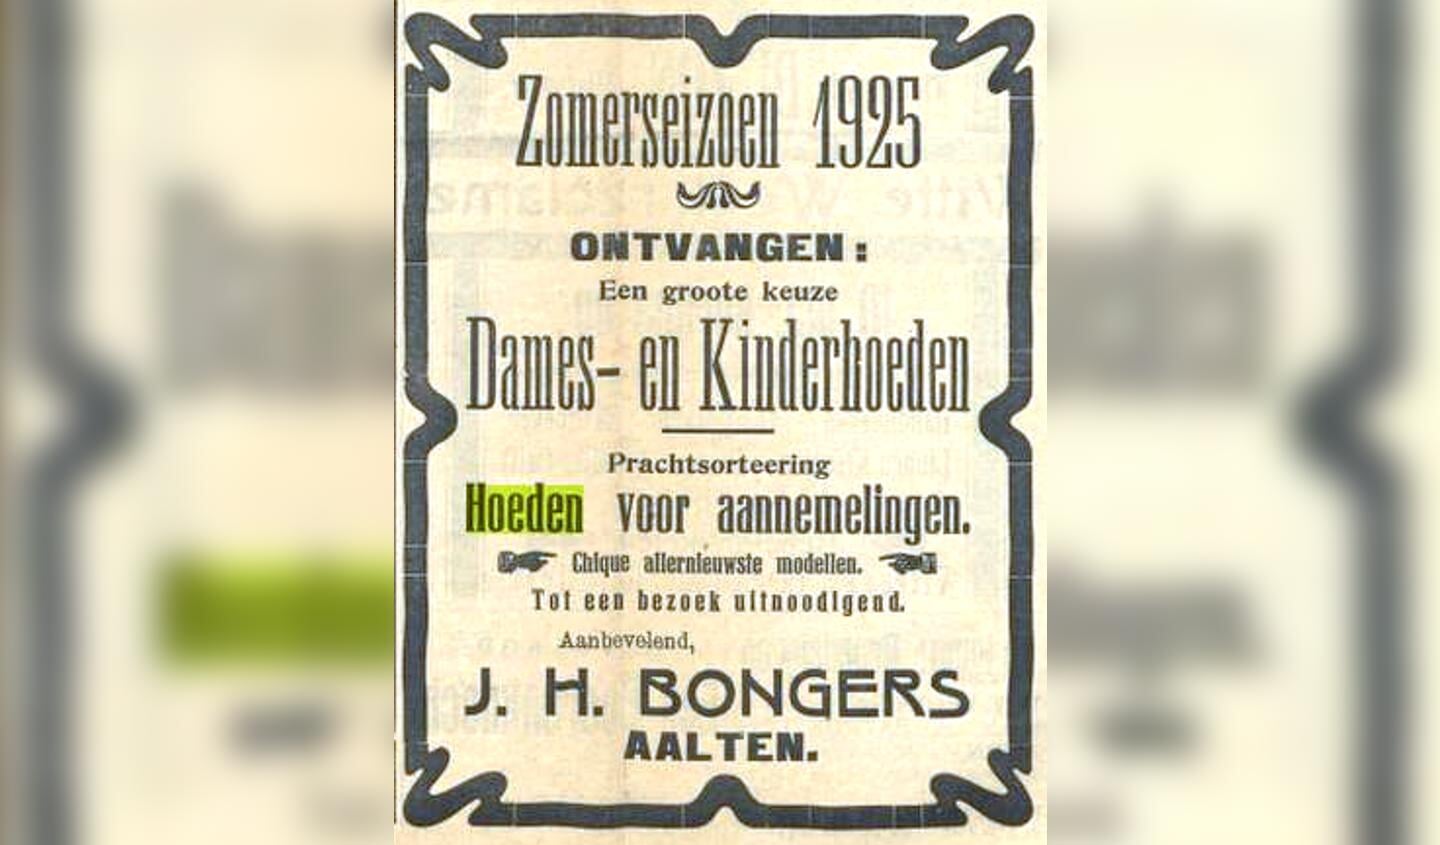 Bongers, dames- en kinderhoeden. Foto: collectie Leo van der Linde